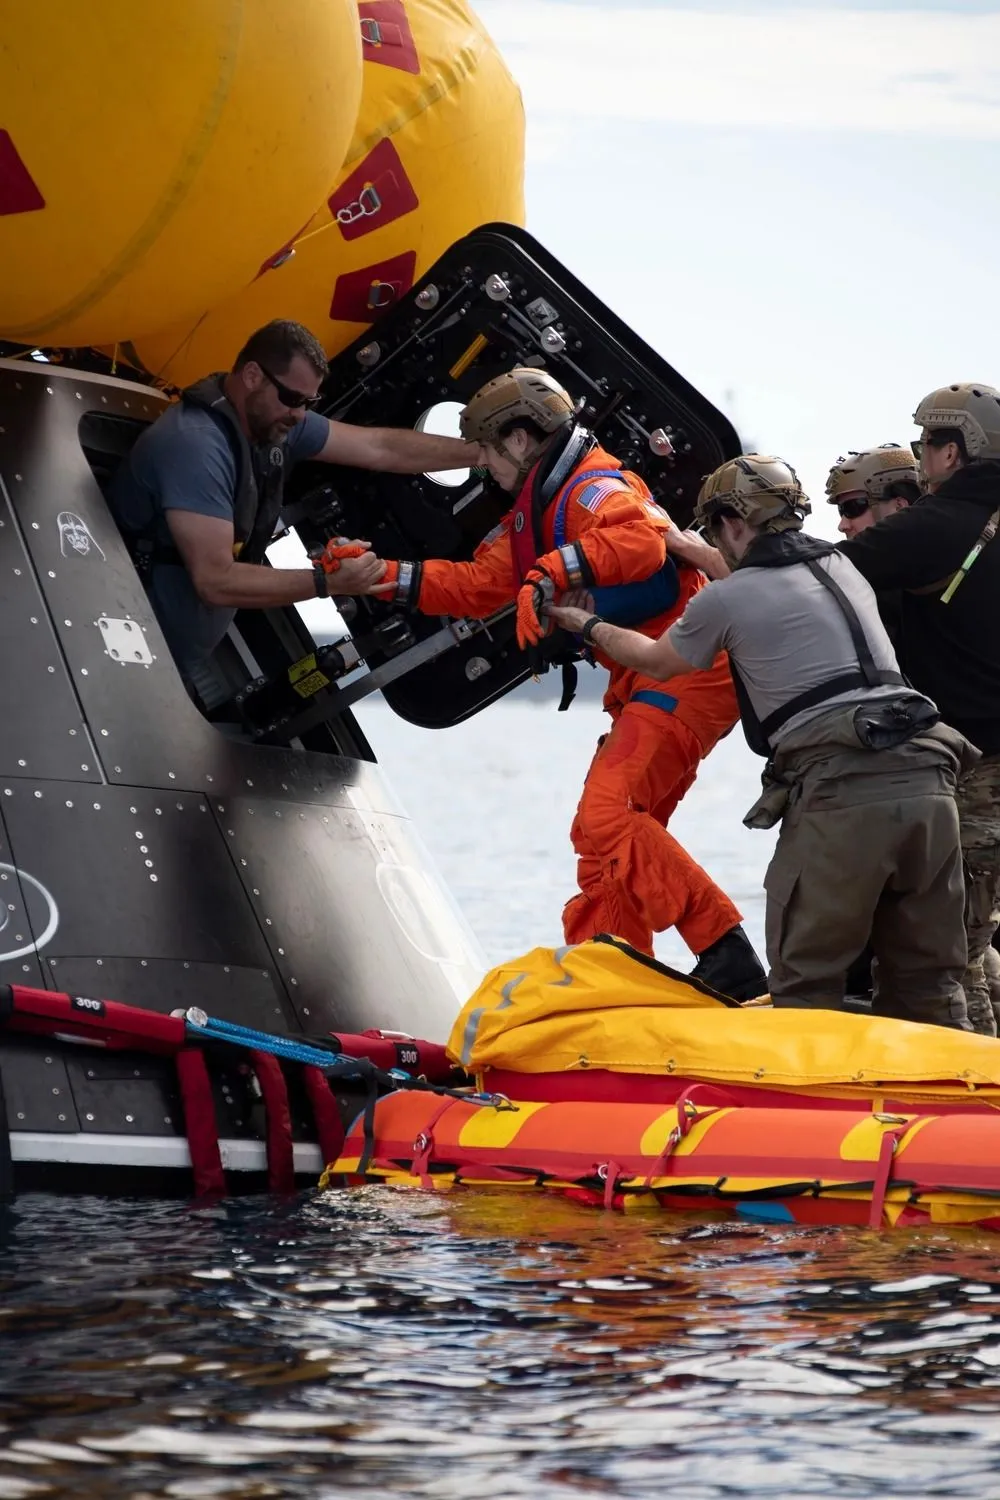 eine astronautin, die in ein raumschiff steigt, das auf einem floss im ozean schwimmt. die menschen um sie herum halten sie wegen des rauen wassers physisch aufrecht